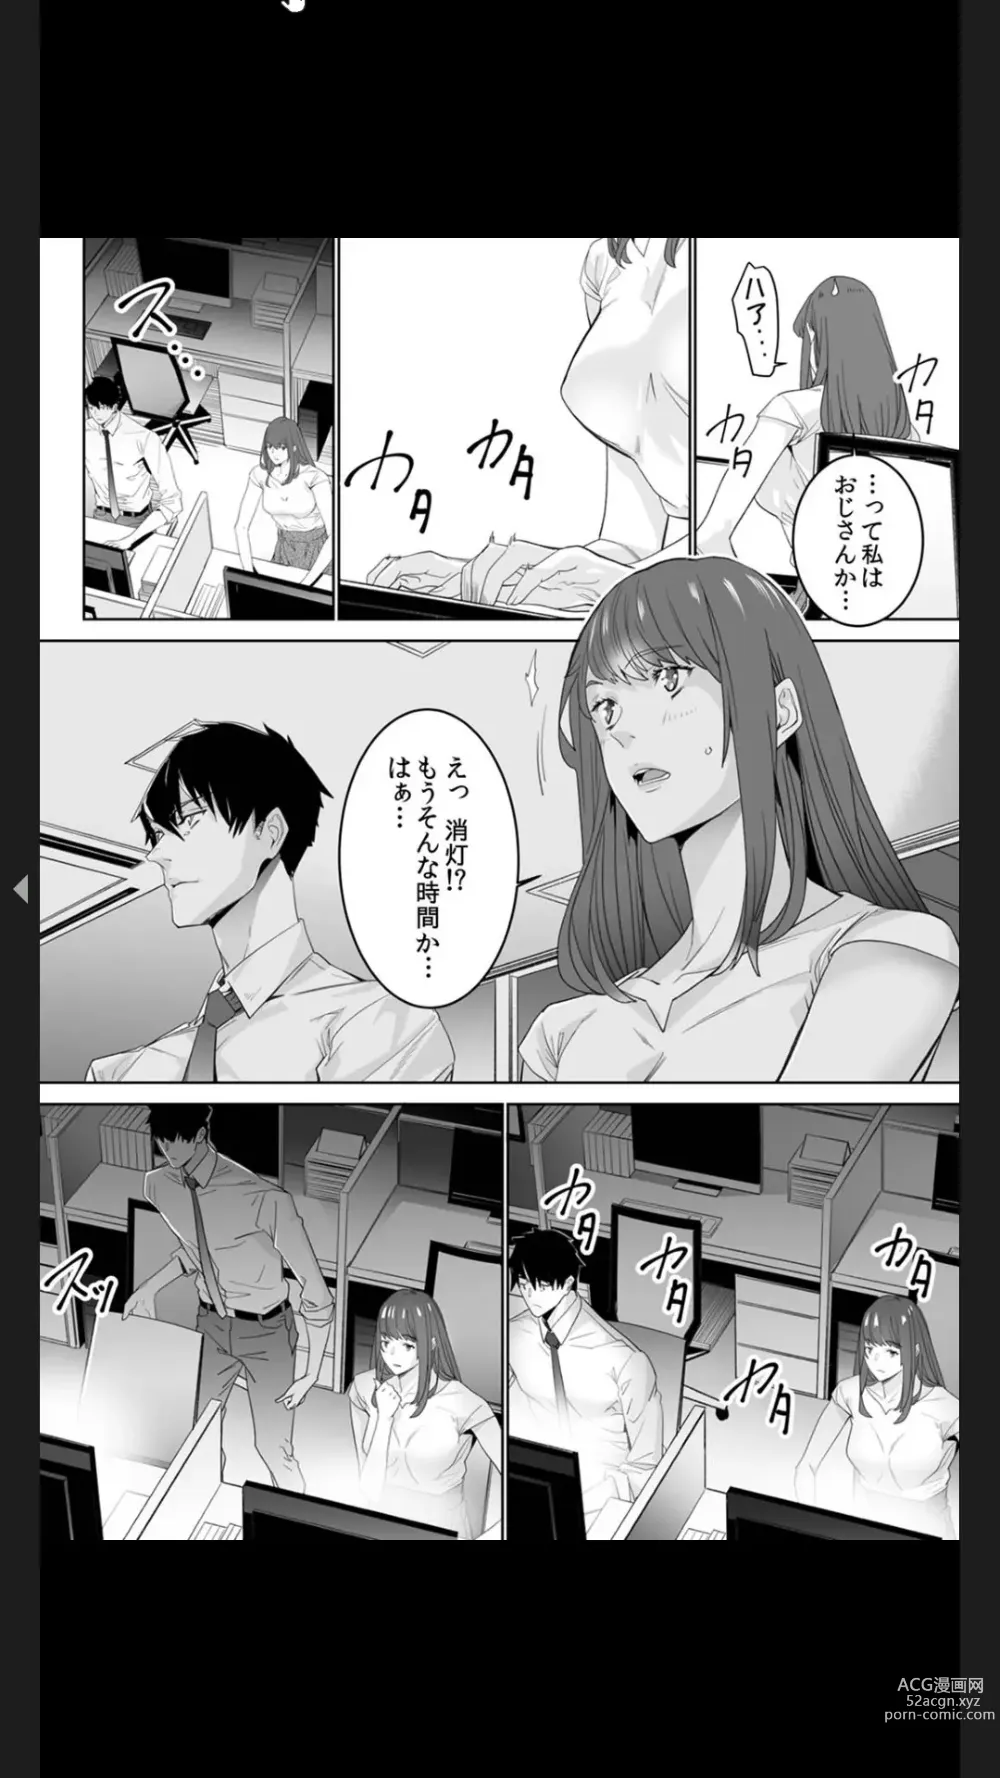 Page 6 of manga Koitsu no SEX, Do-S Sugi...!